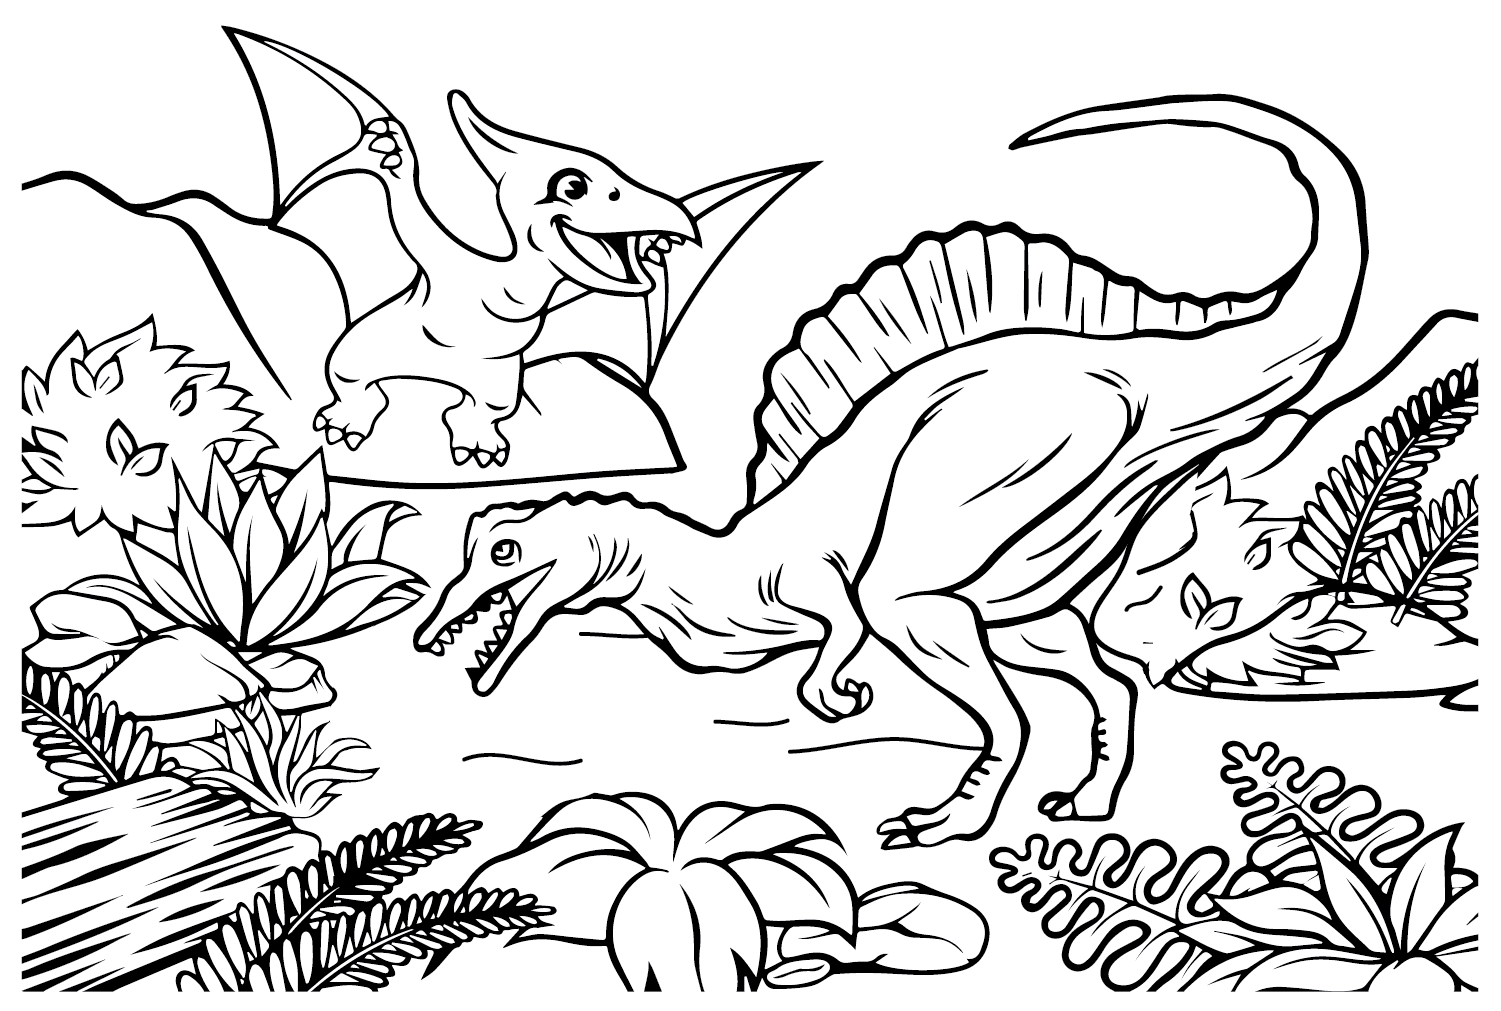 Afbeeldingen Spinosaurus Aegyptiacus naar kleur van Spinosaurus Aegyptiacus